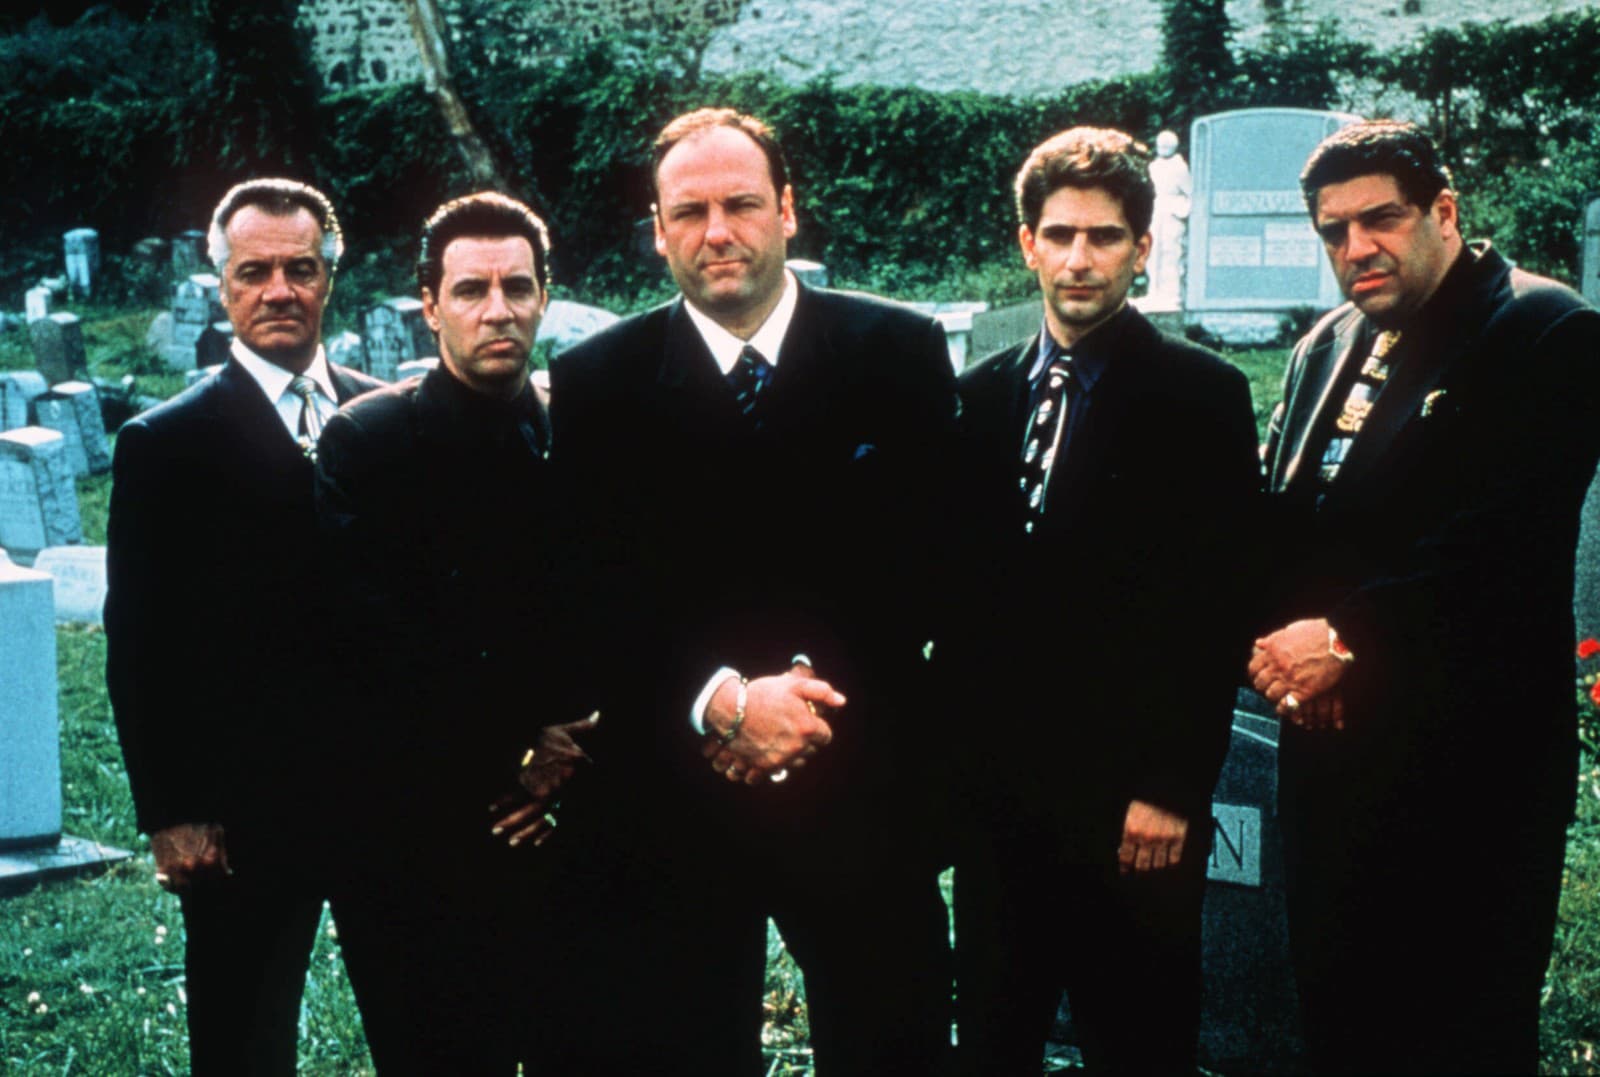 Hrdinovia seriálu The Sopranos (Sopránovci)